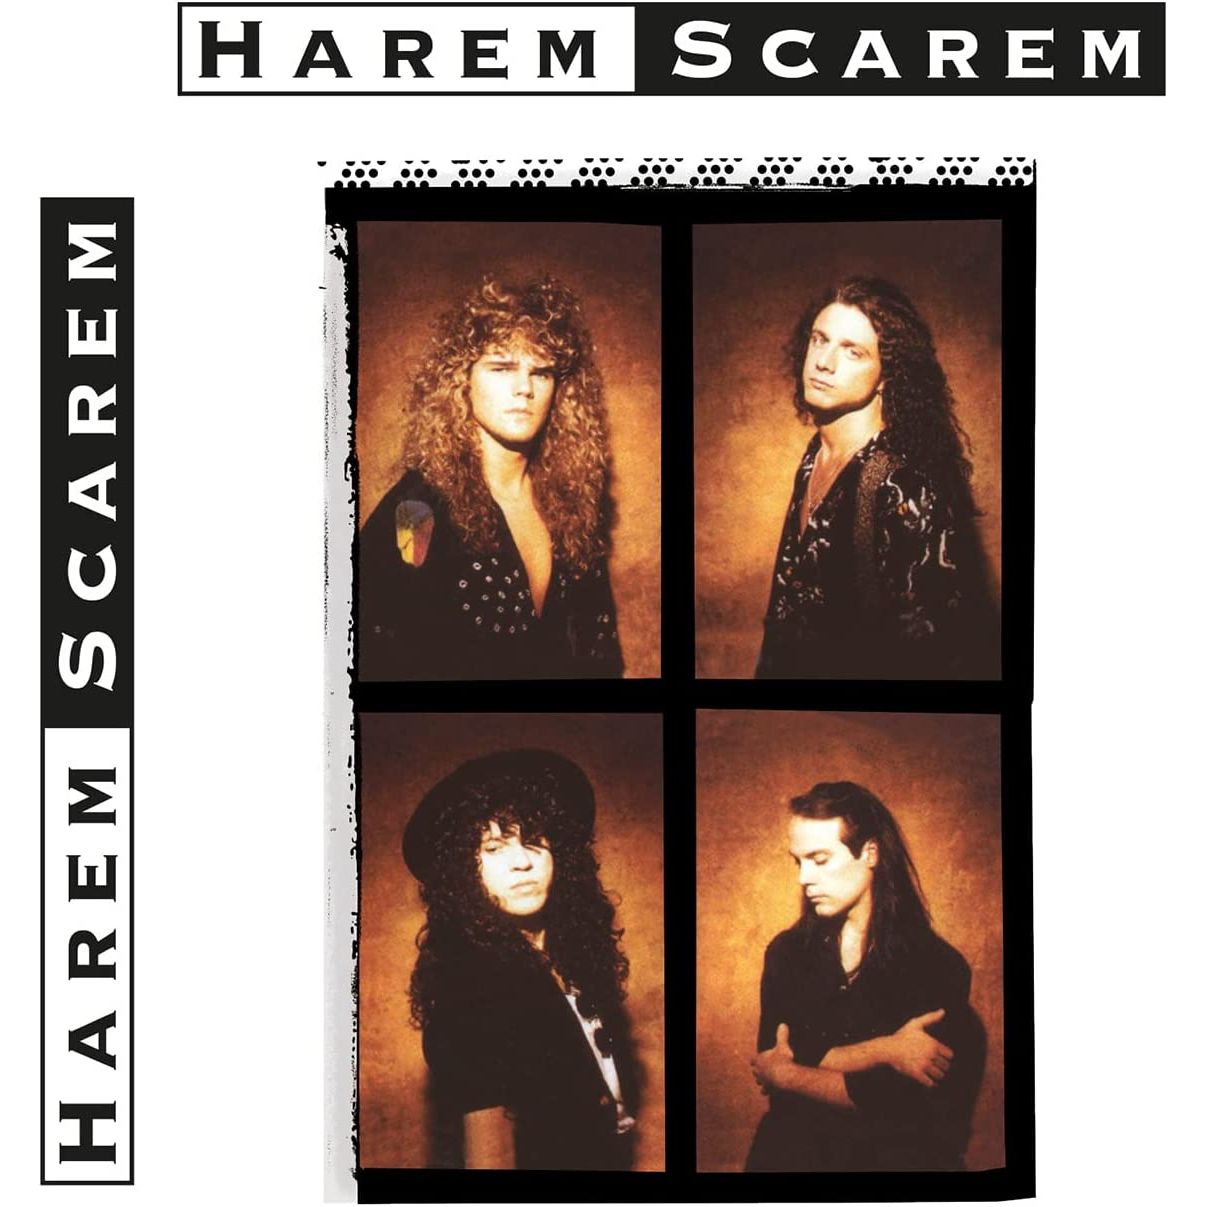 HAREM SCAREM - 180GR./DEBUT ALBUM/1000 CPS CLEAR & GOLD MARBLED VINYL